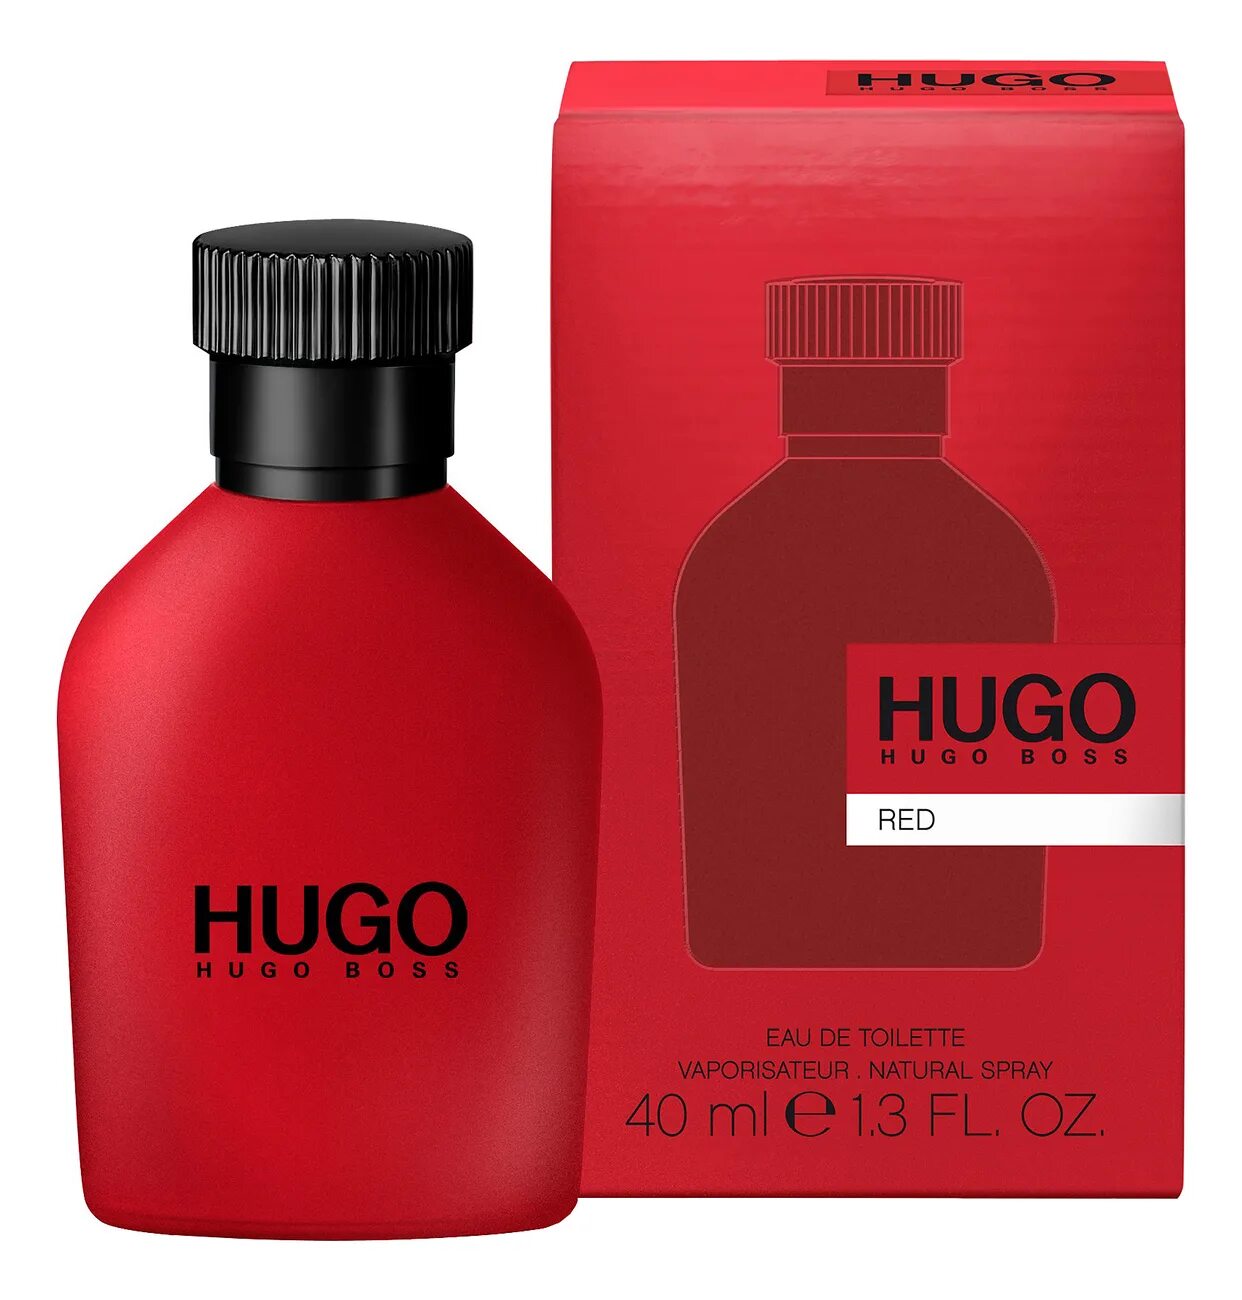 Hugo Boss "Hugo Red" EDT, 100ml. Hugo Boss Red, EDT., 150 ml. Hugo Boss Red EDT Хьюго босс ред туалетная вода 150 ml. Hugo Boss мужской Hugo туалетная вода (EDT) 40мл.